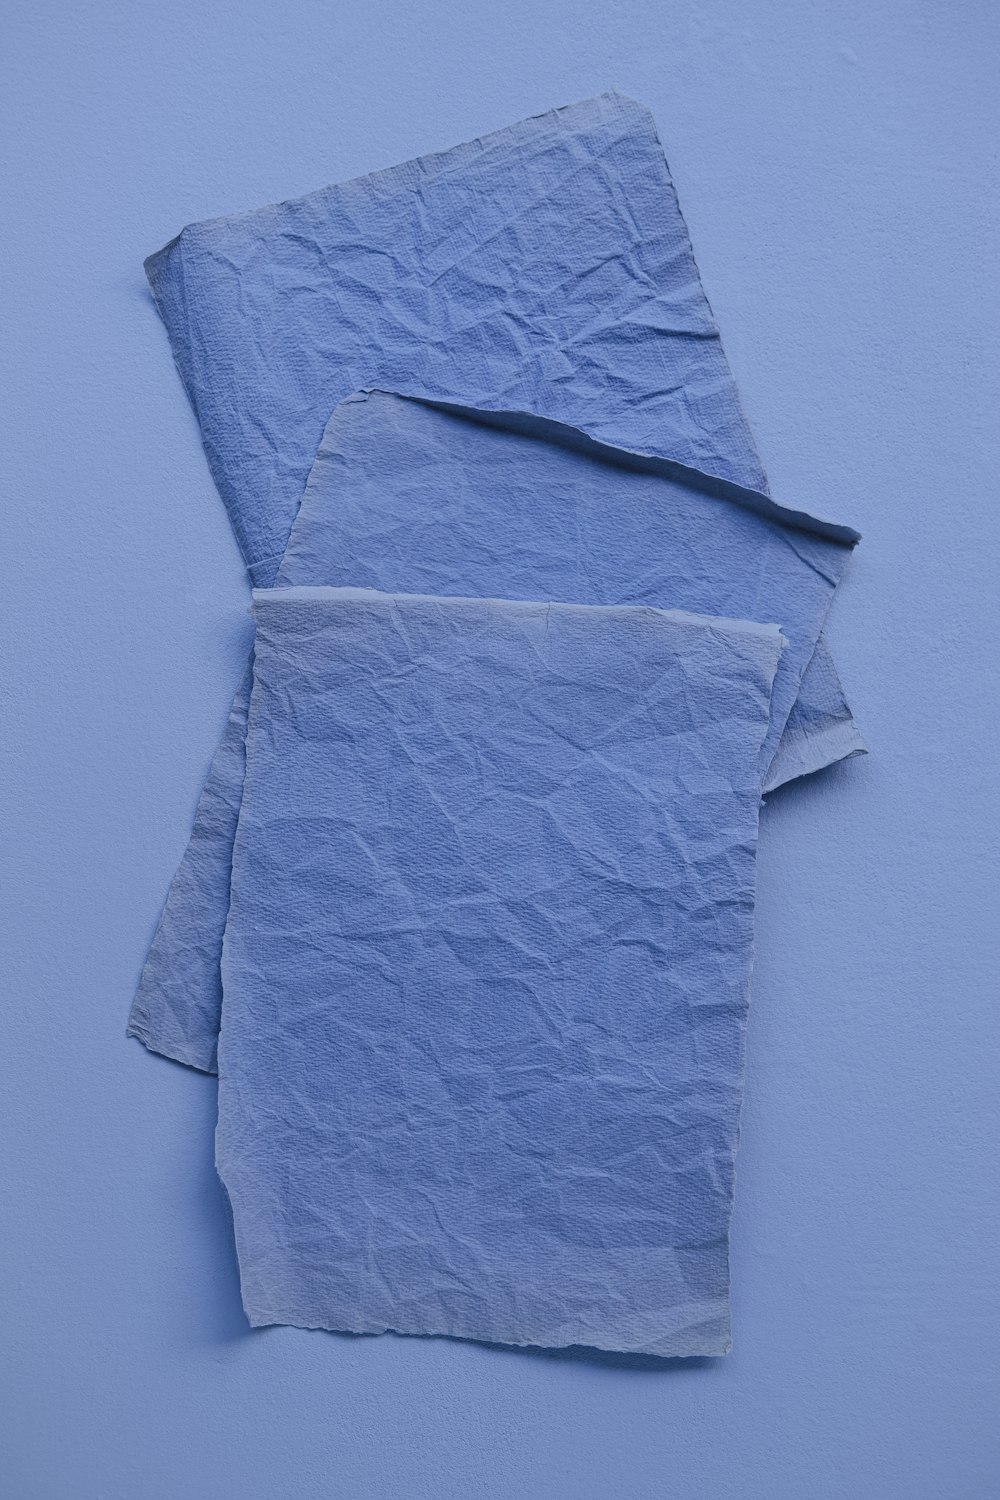 due pezzi di carta blu su una superficie blu